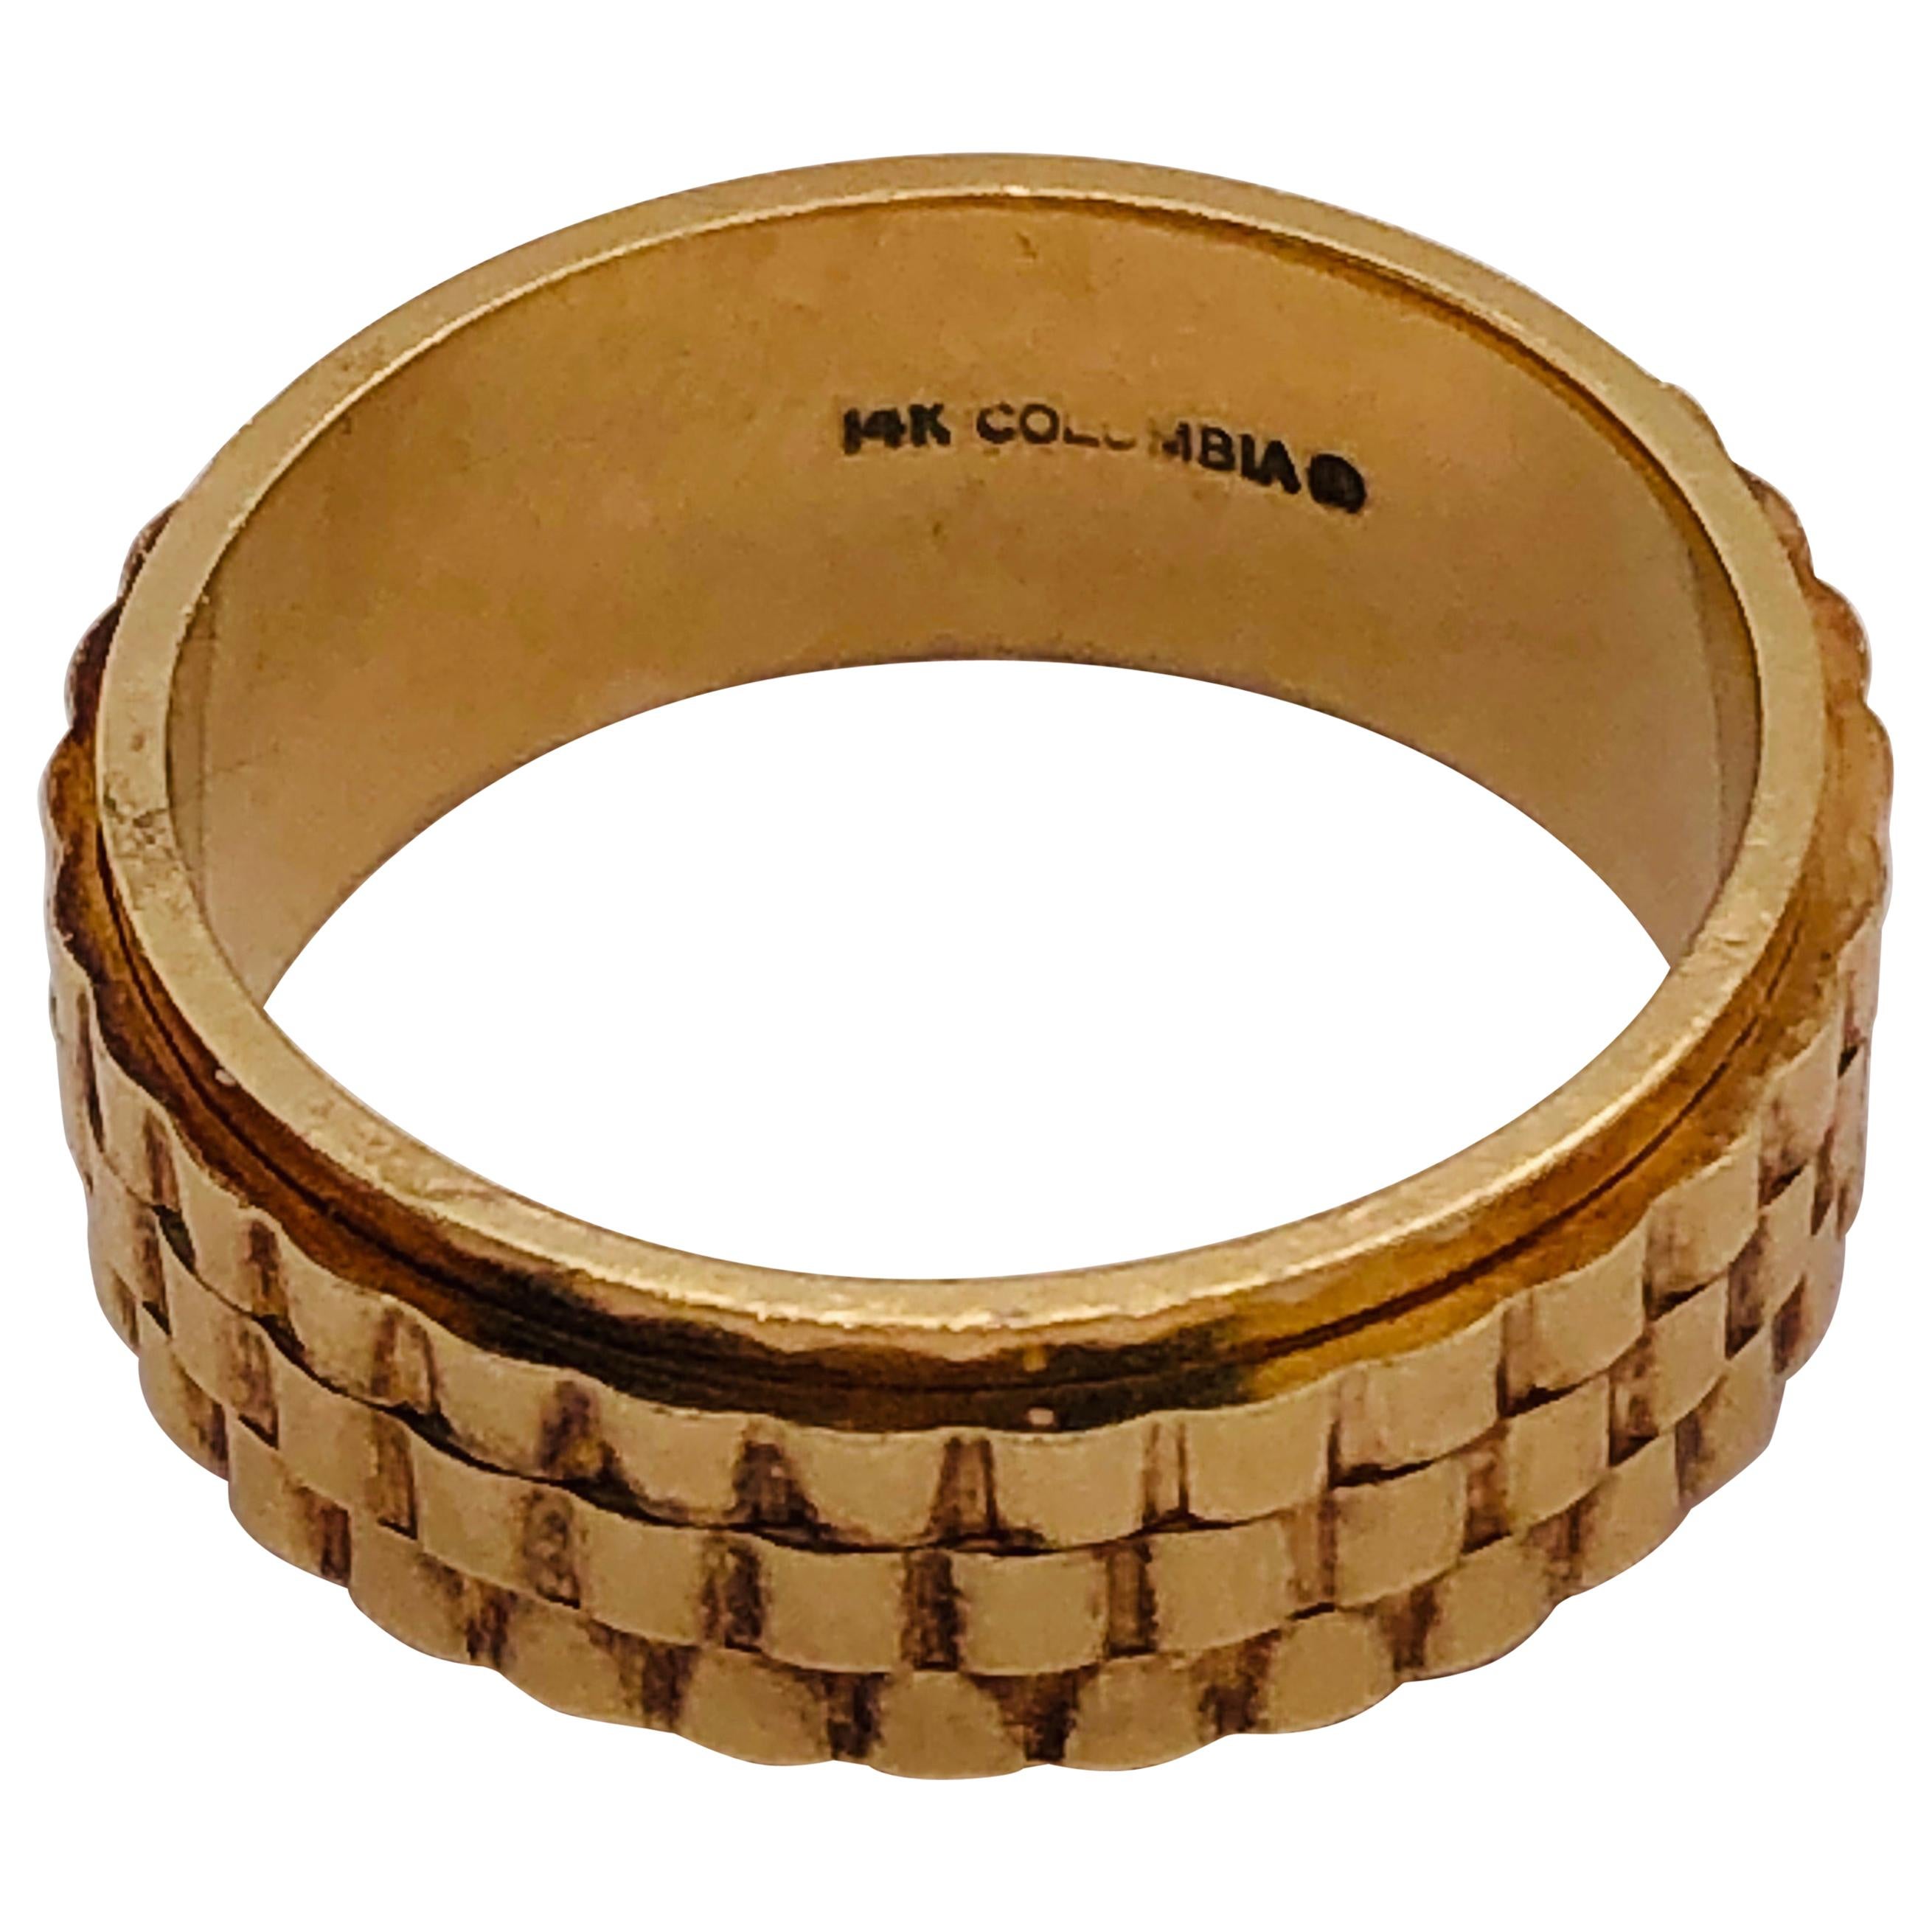 14 Karat Yellow Gold Band Ring or Wedding Ring Weave Design